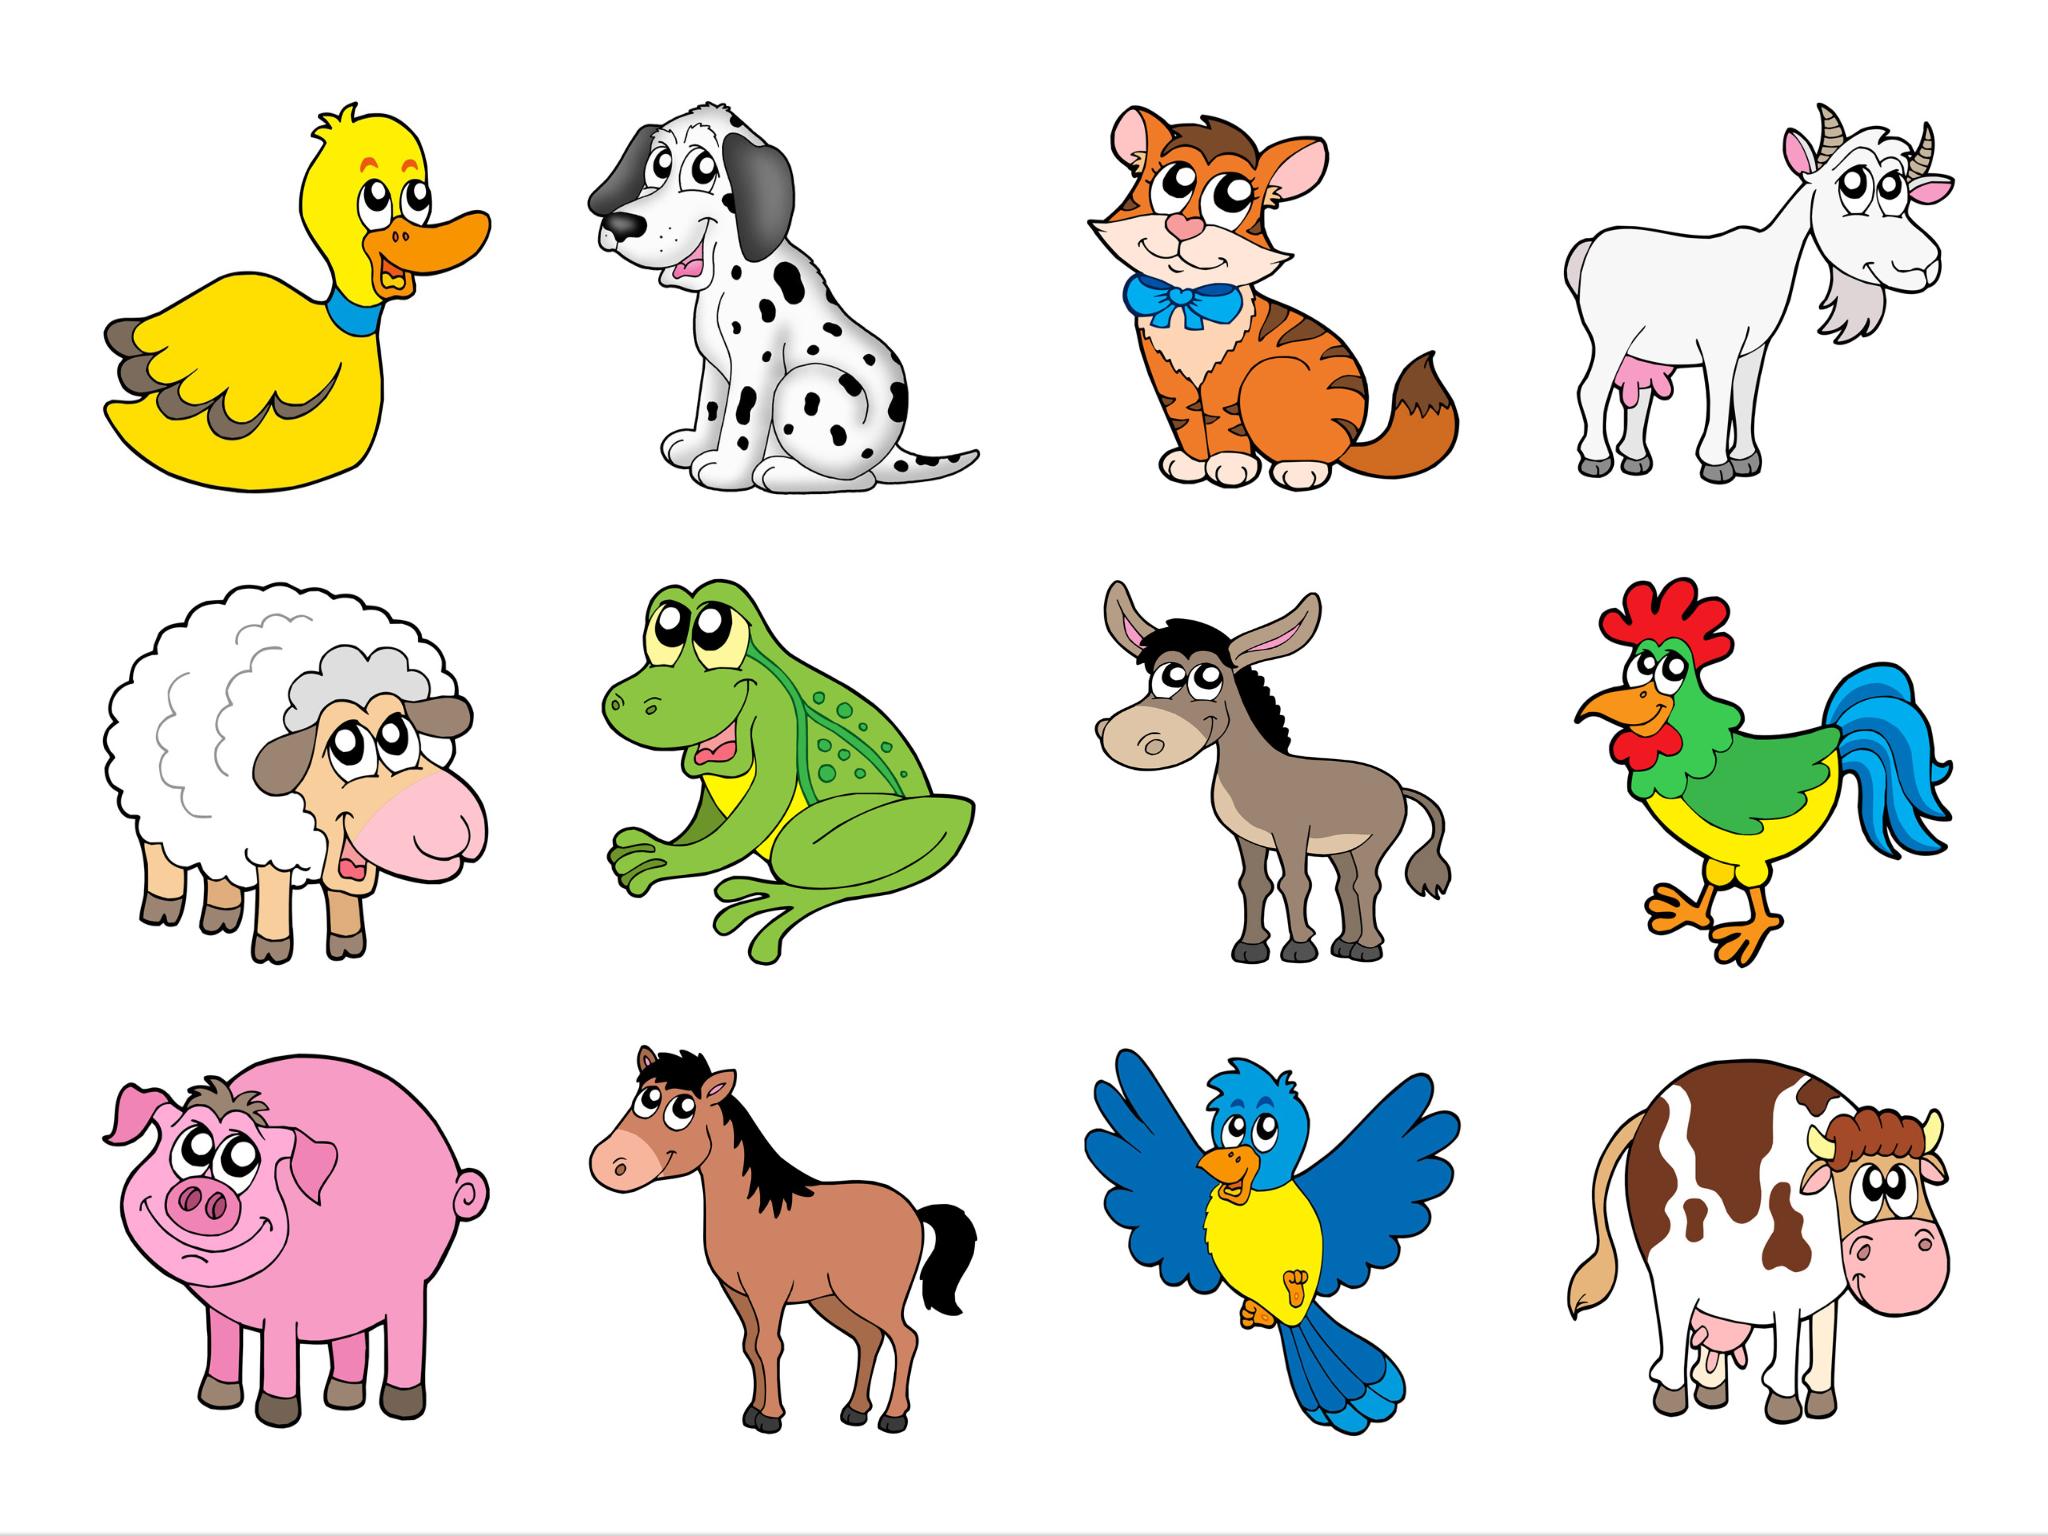 Домашних животных игра для детей. Изображения домашних животных для детей. Для детей. Животные. Мультяшные животные. Иллюстрации животных для детей.